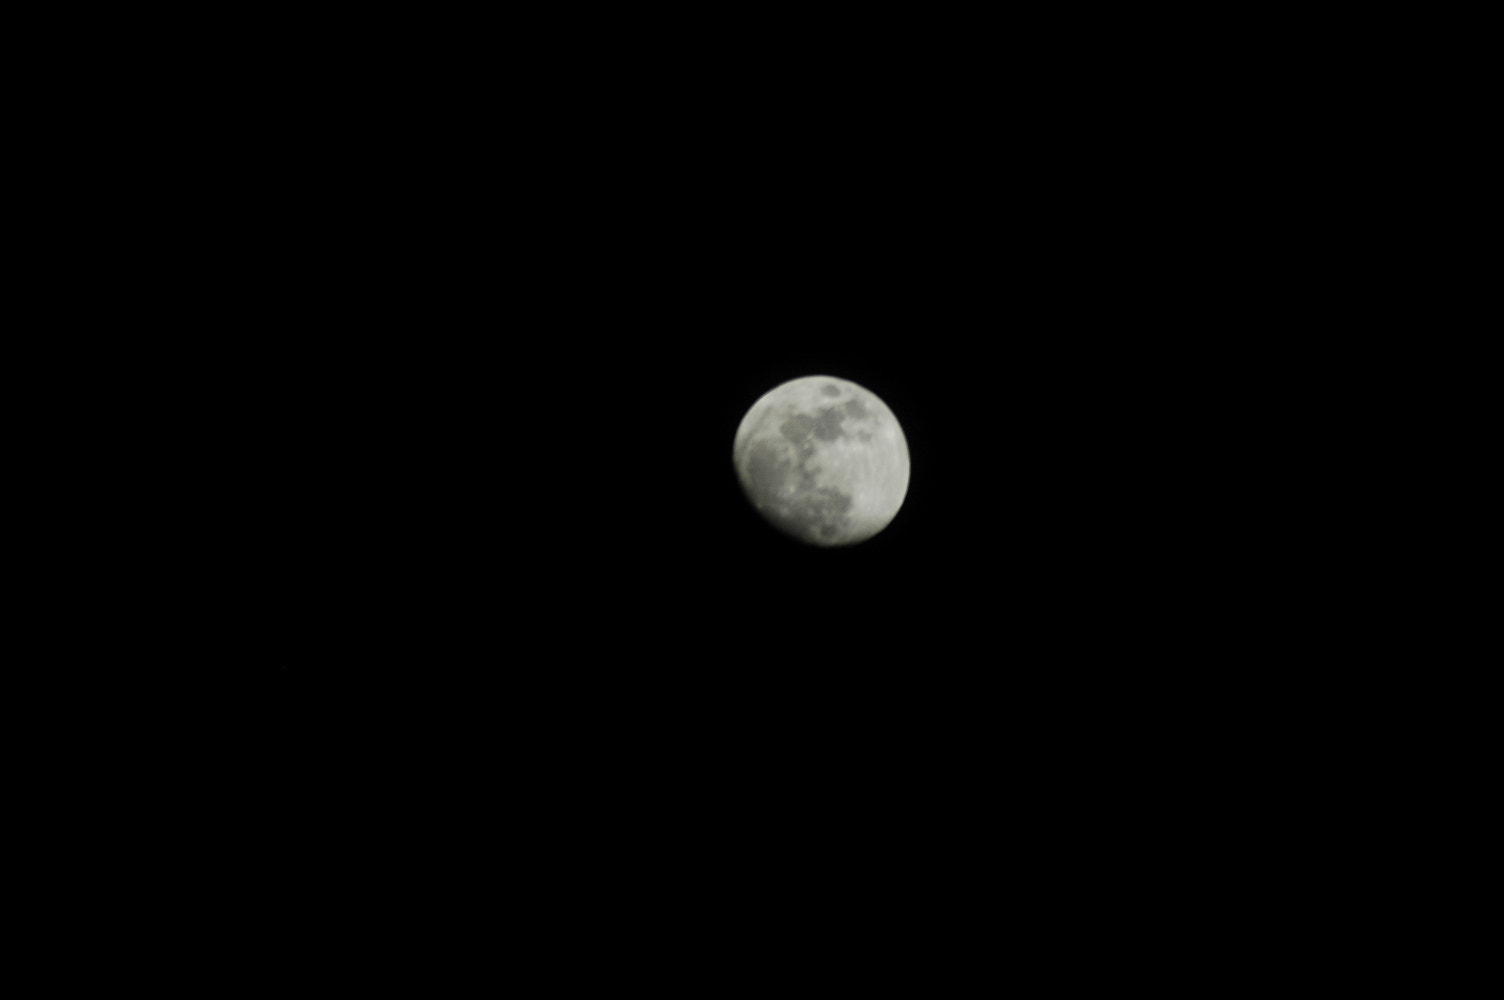 AF Zoom-Nikkor 70-300mm f/4-5.6D ED sample photo. Moonday photography